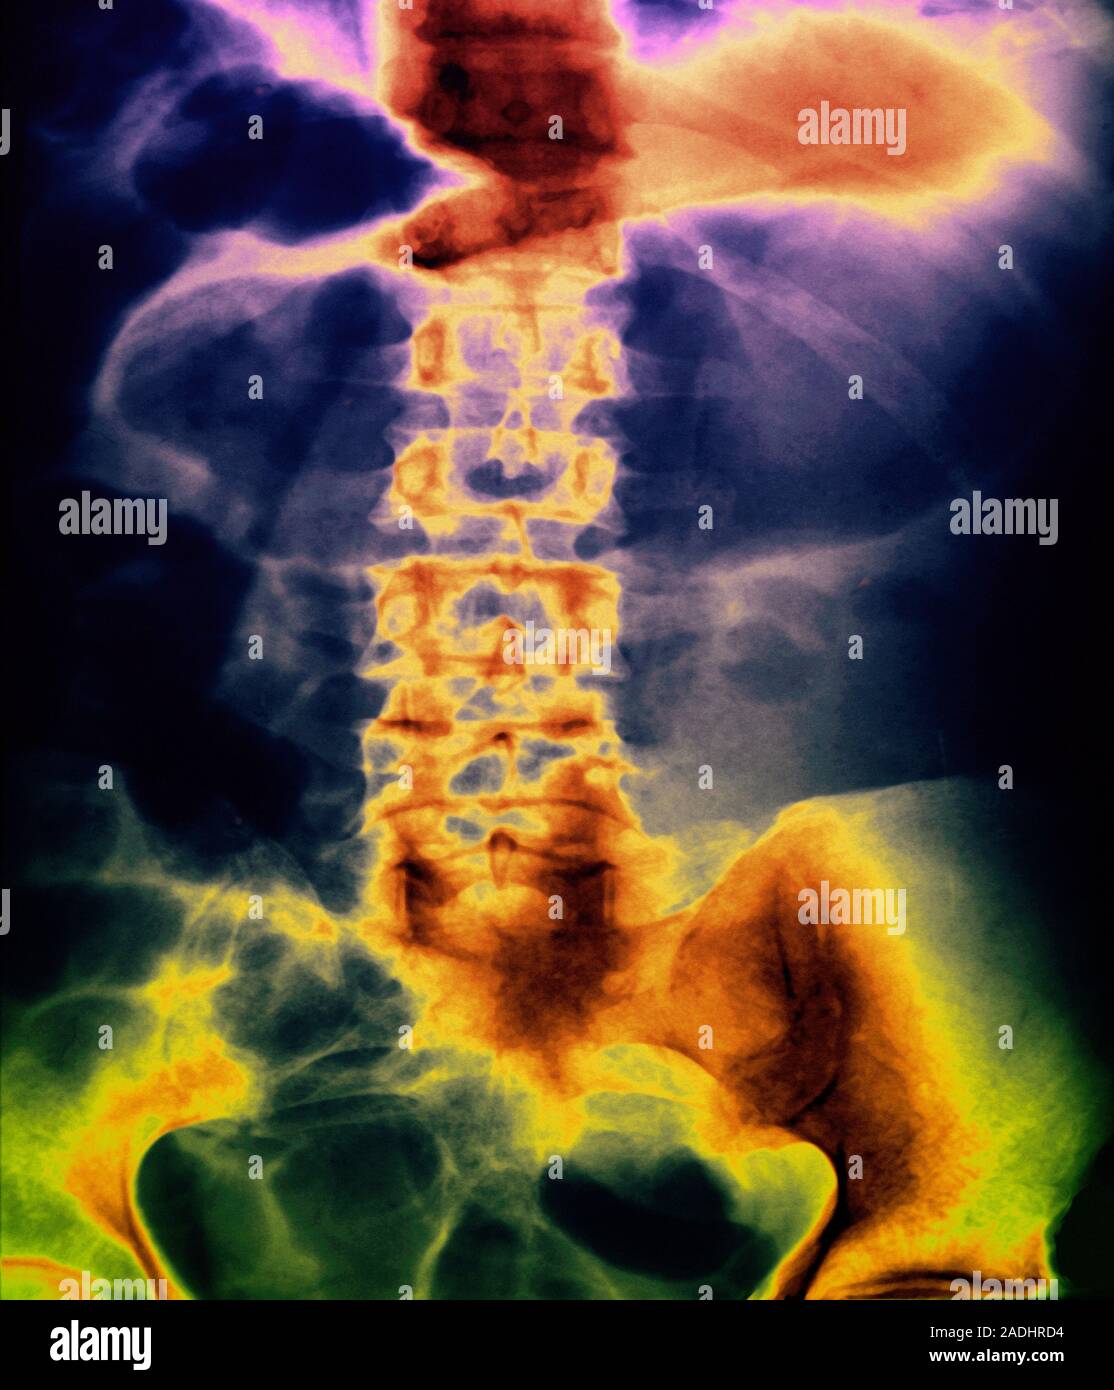 Twisted colon. X-ray de couleur de l'abdomen d'un patient avec une torsion  du côlon (gros intestin), une condition connue sous le nom d'un volvulus.  Le twist a conduit t Photo Stock -